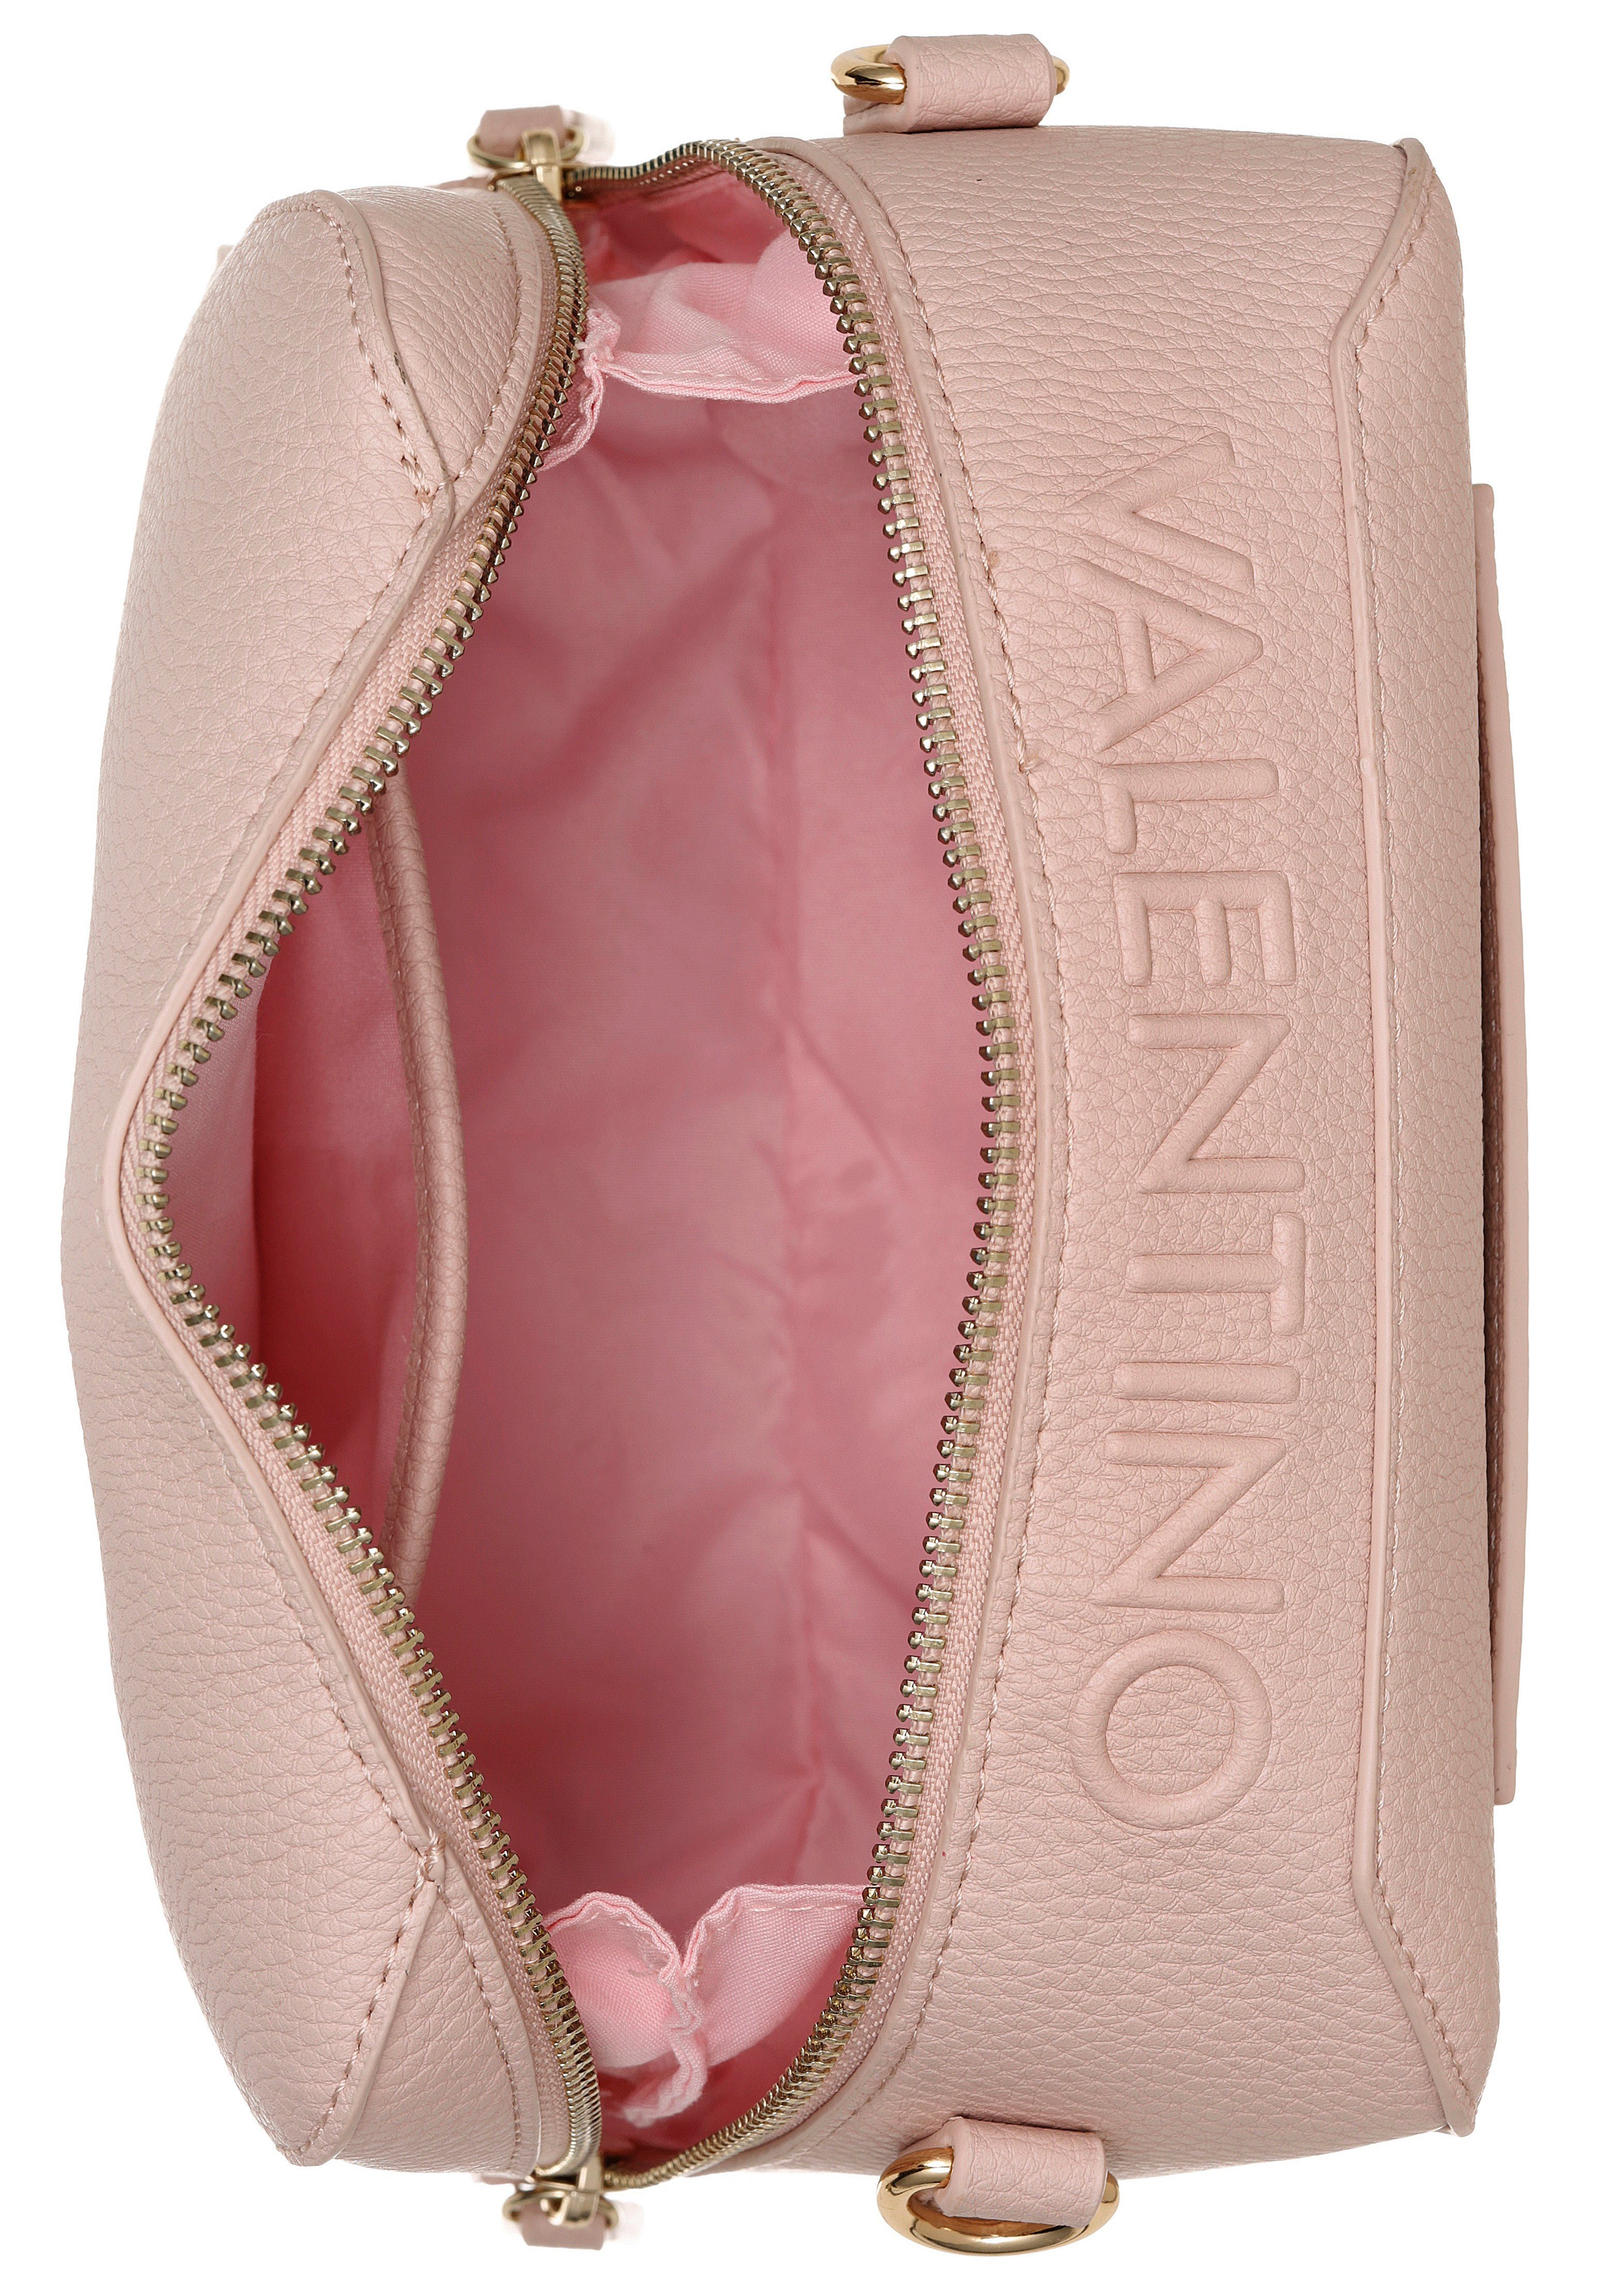 Metall VALENTINO PATTIE, mit Standfüßchen Umhängetasche aus rosa BAGS